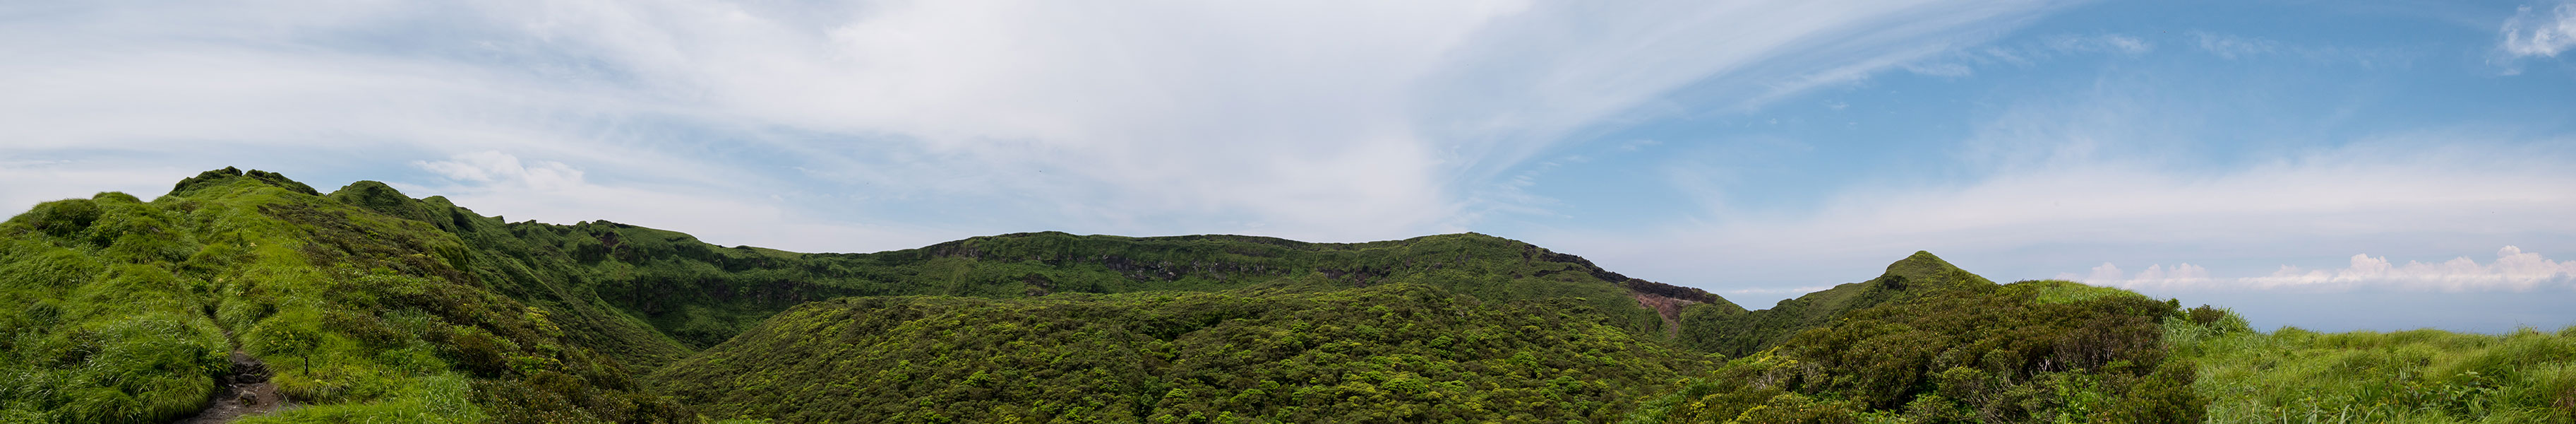 八丈富士 大穴の縁から見た中央火口丘